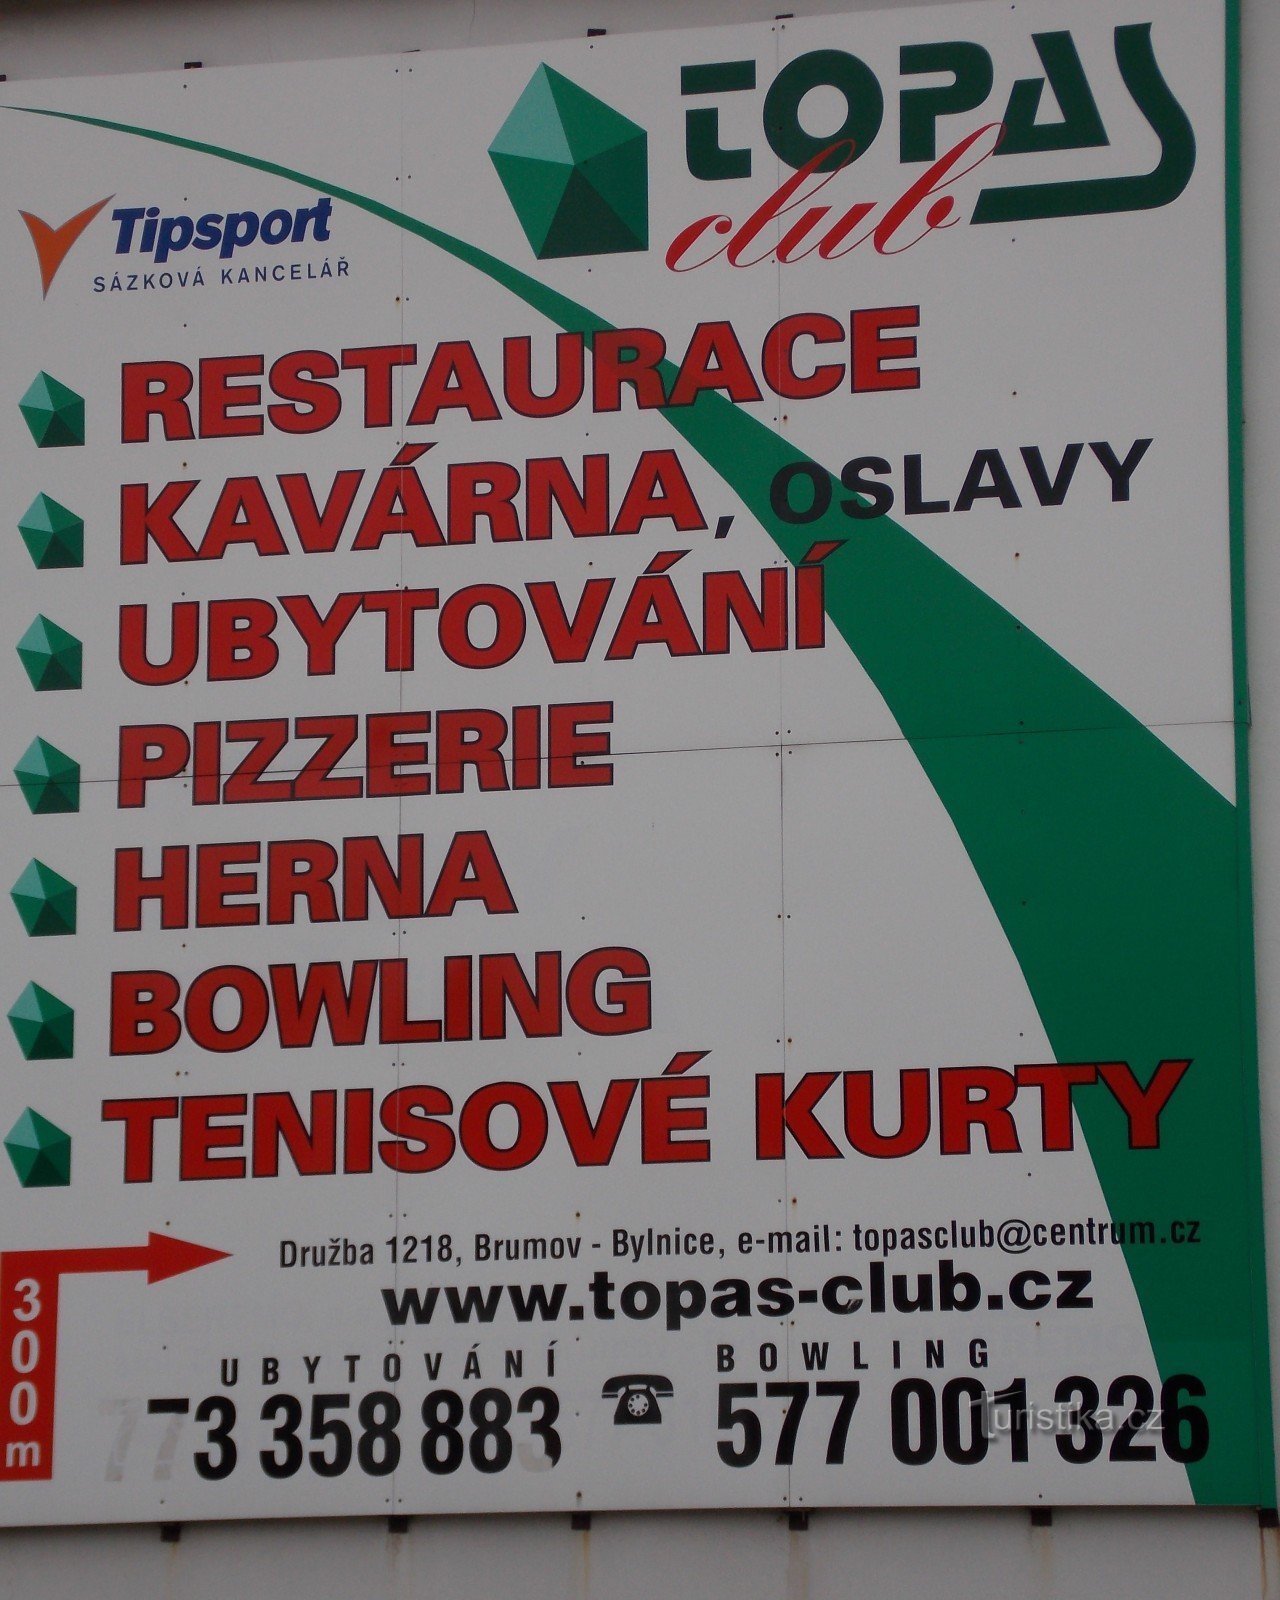 Topas Club a Brumov - Bylnice